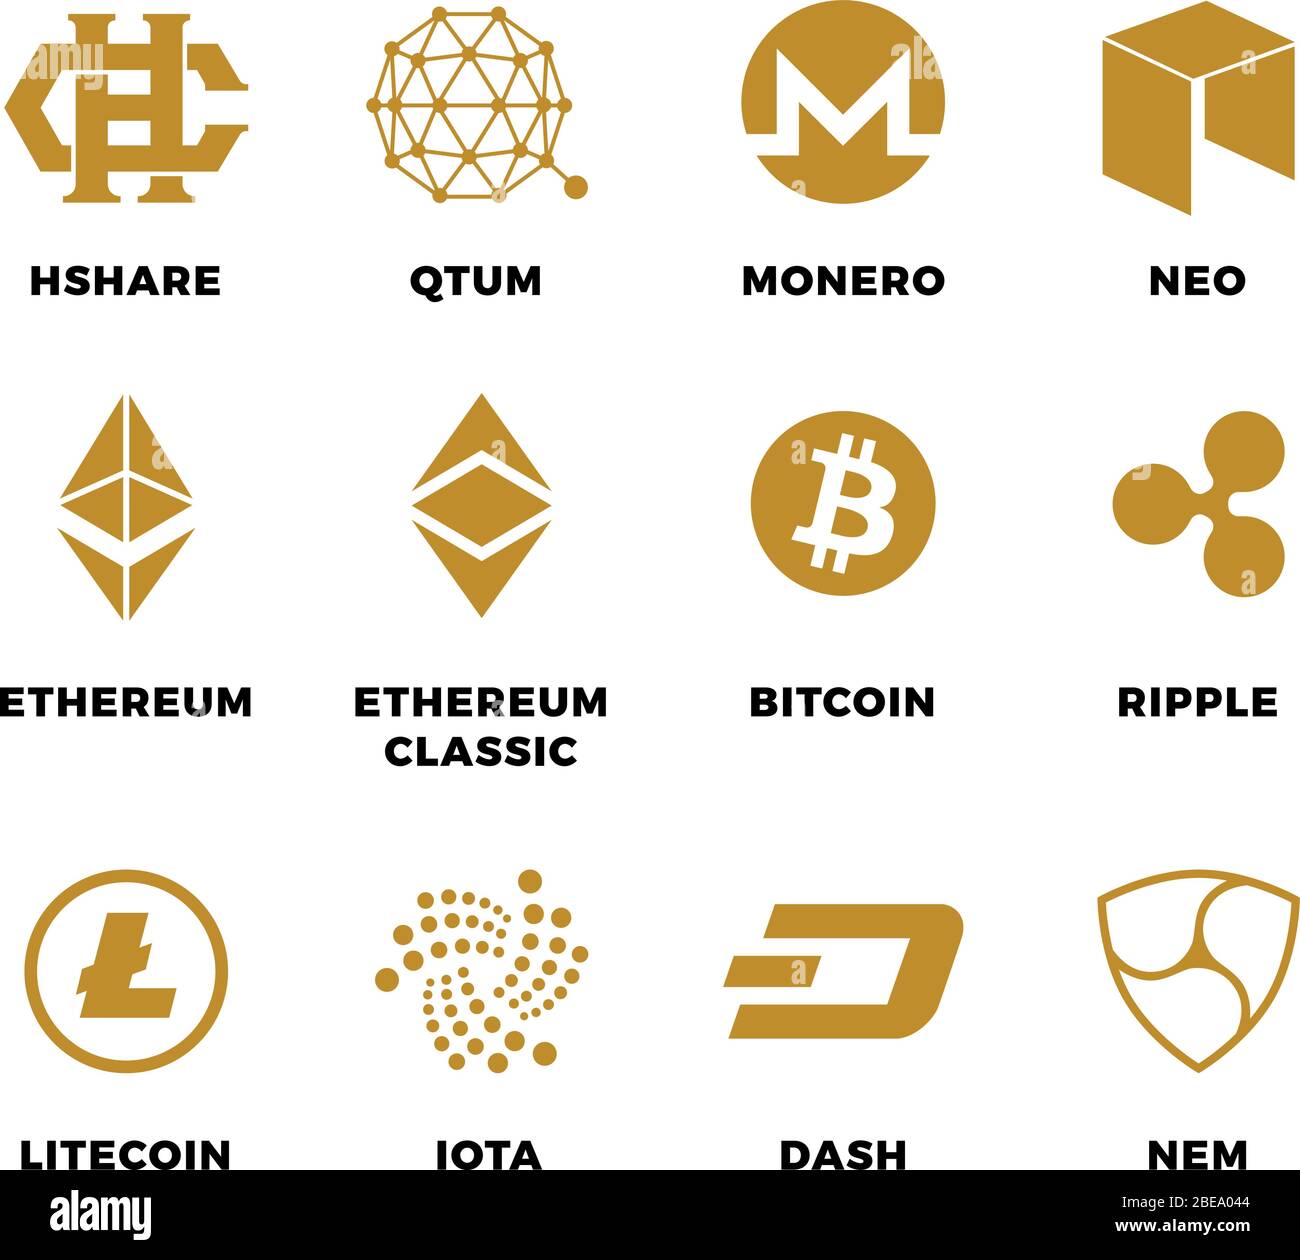 Simboli vettoriali di blockchain di bitrency di criptovaluta popolari. Immagine di bitcoin e criptovaluta, etereo e litecoina Illustrazione Vettoriale